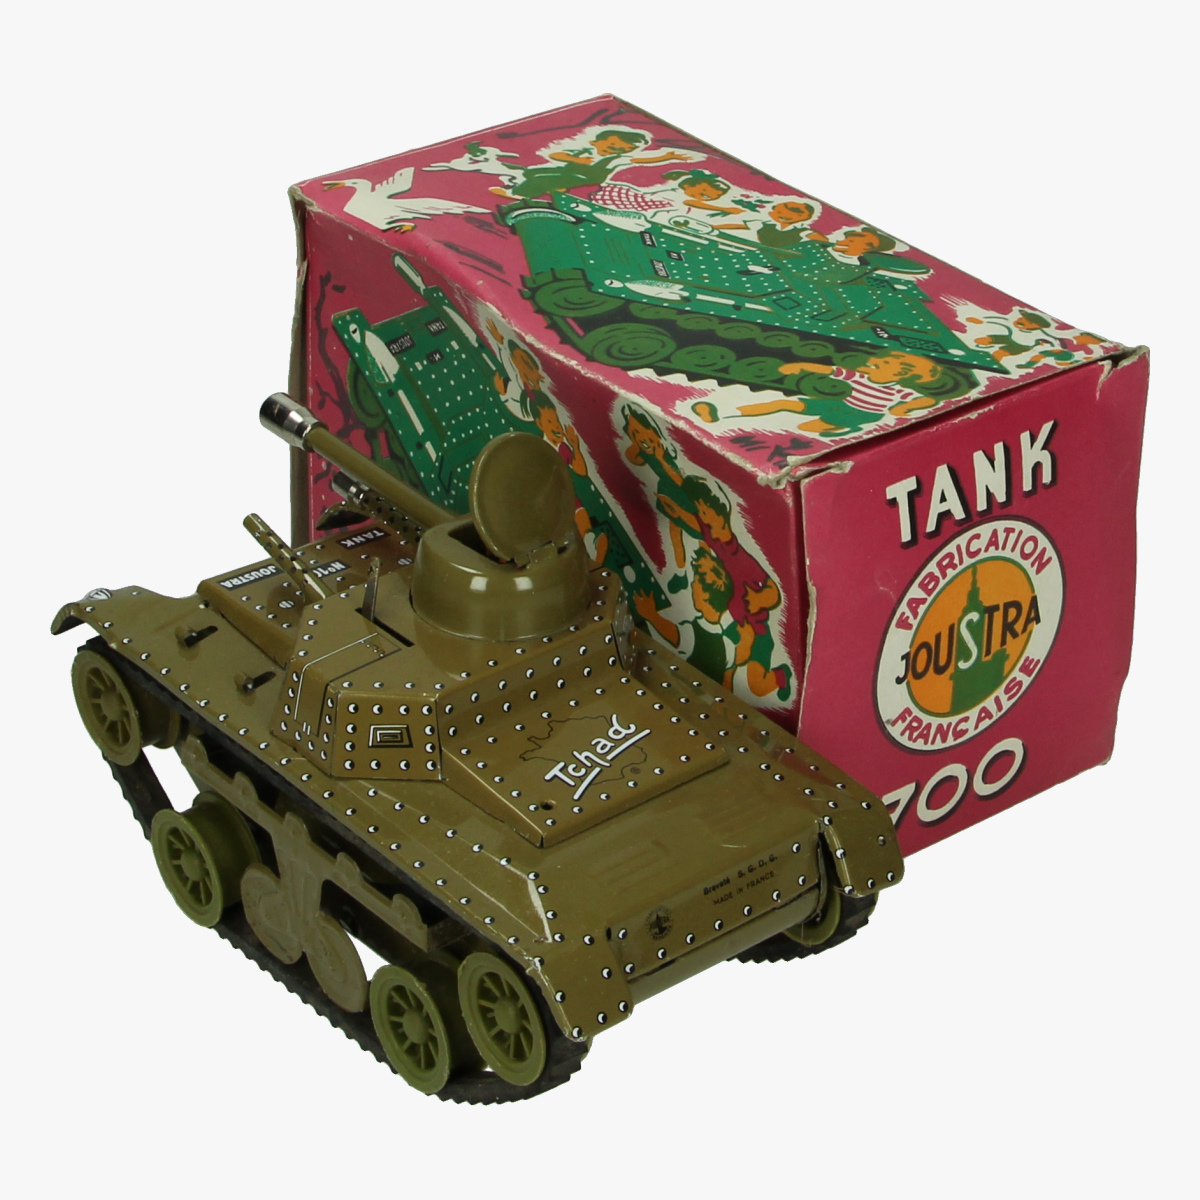 Afbeeldingen van Joustra Tank 700 blik